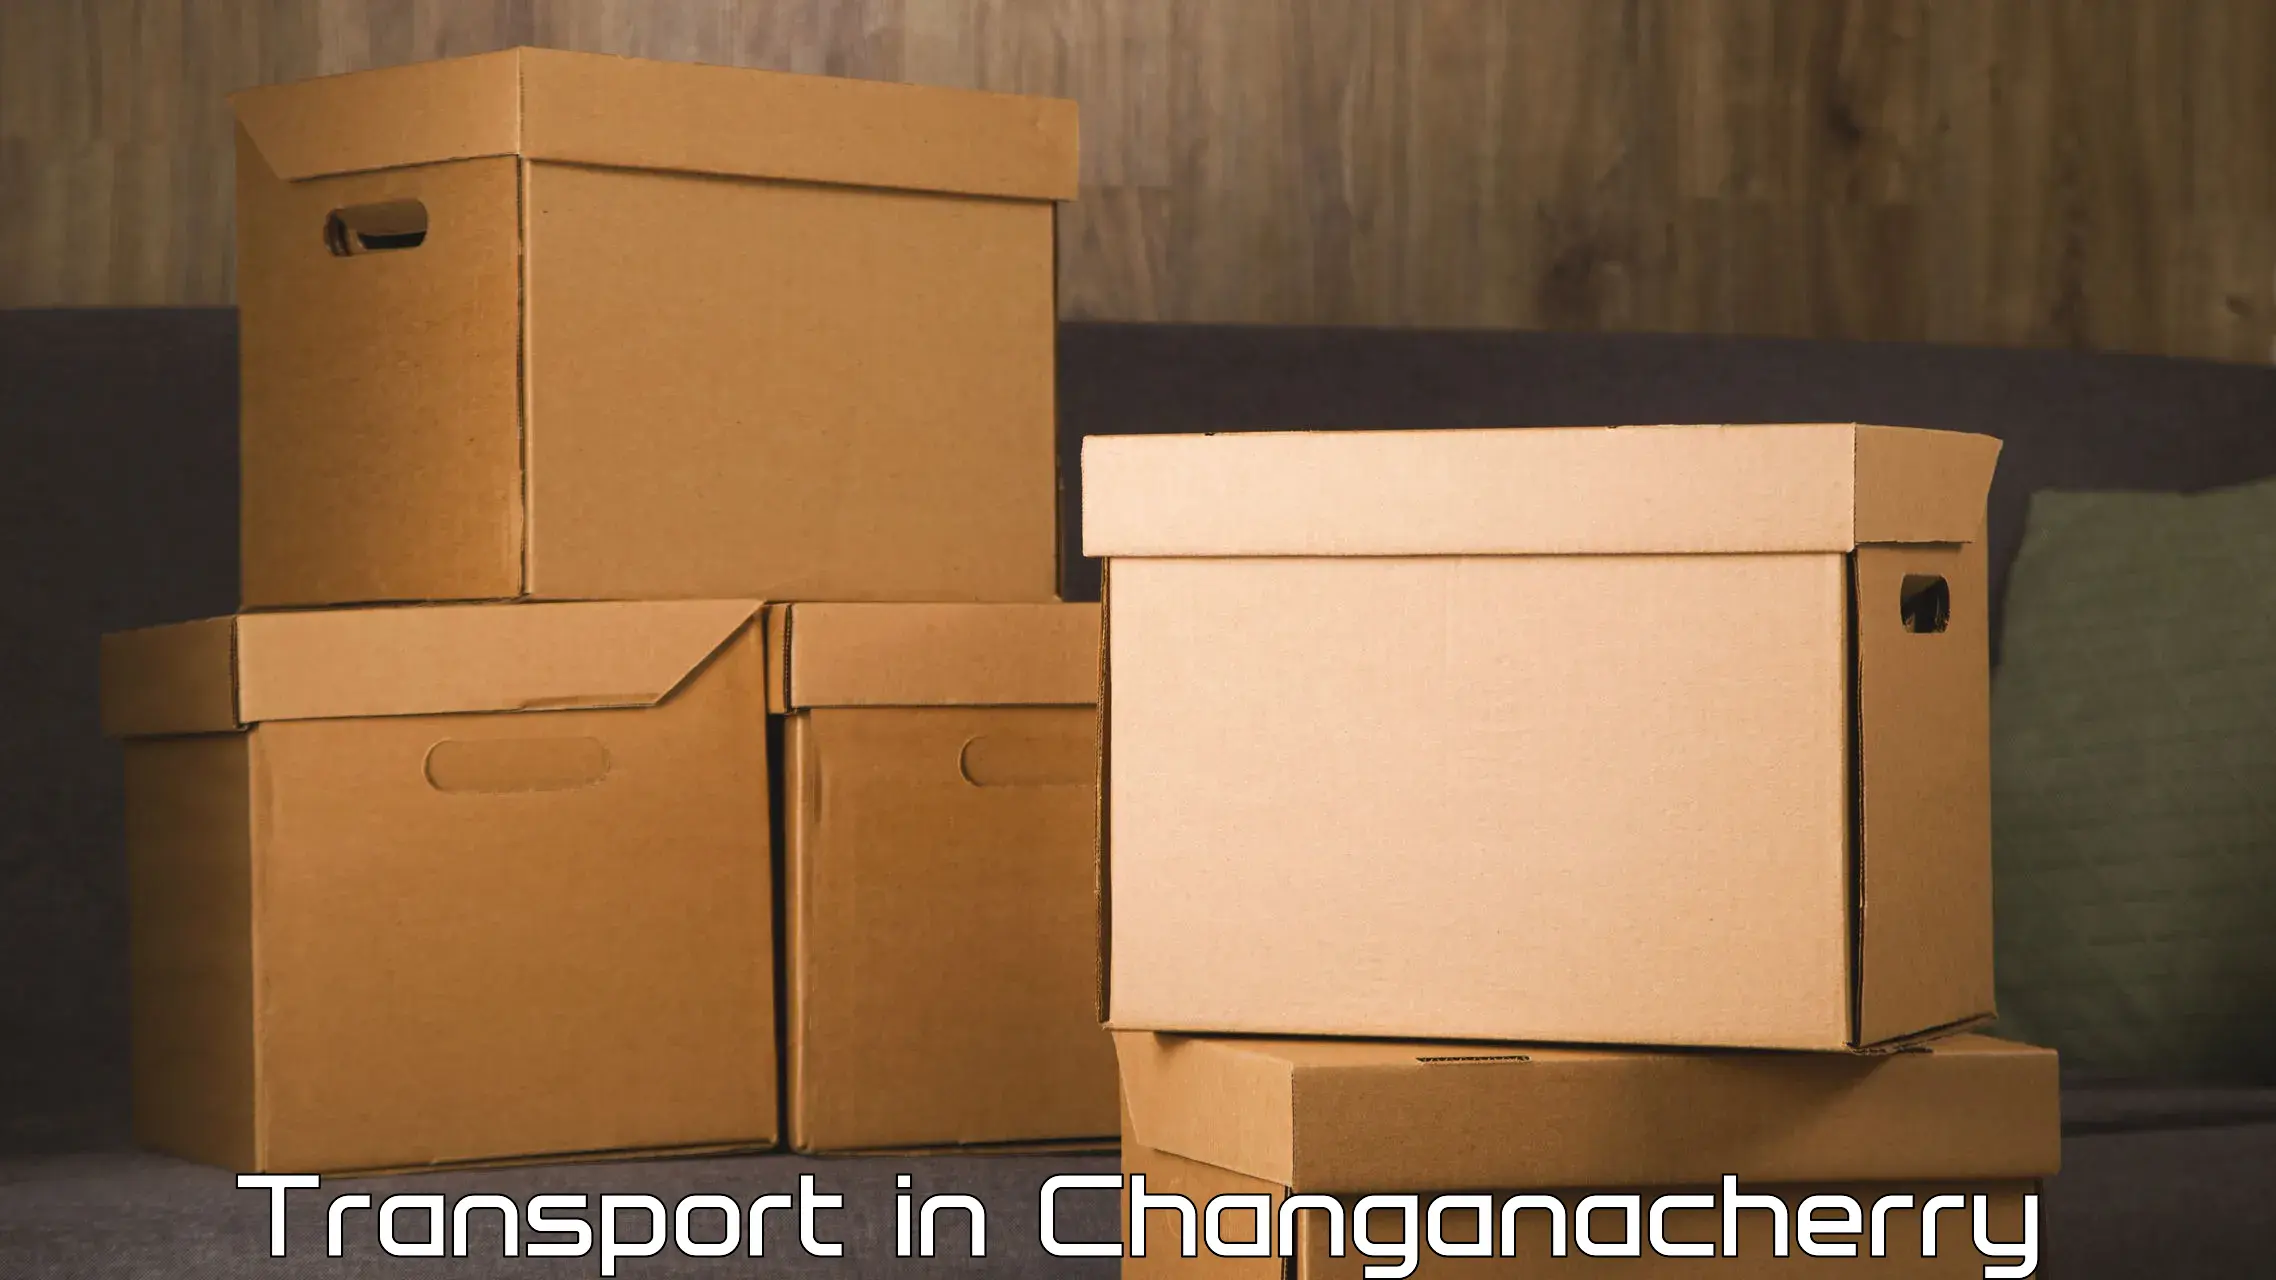 Online transport in Changanacherry